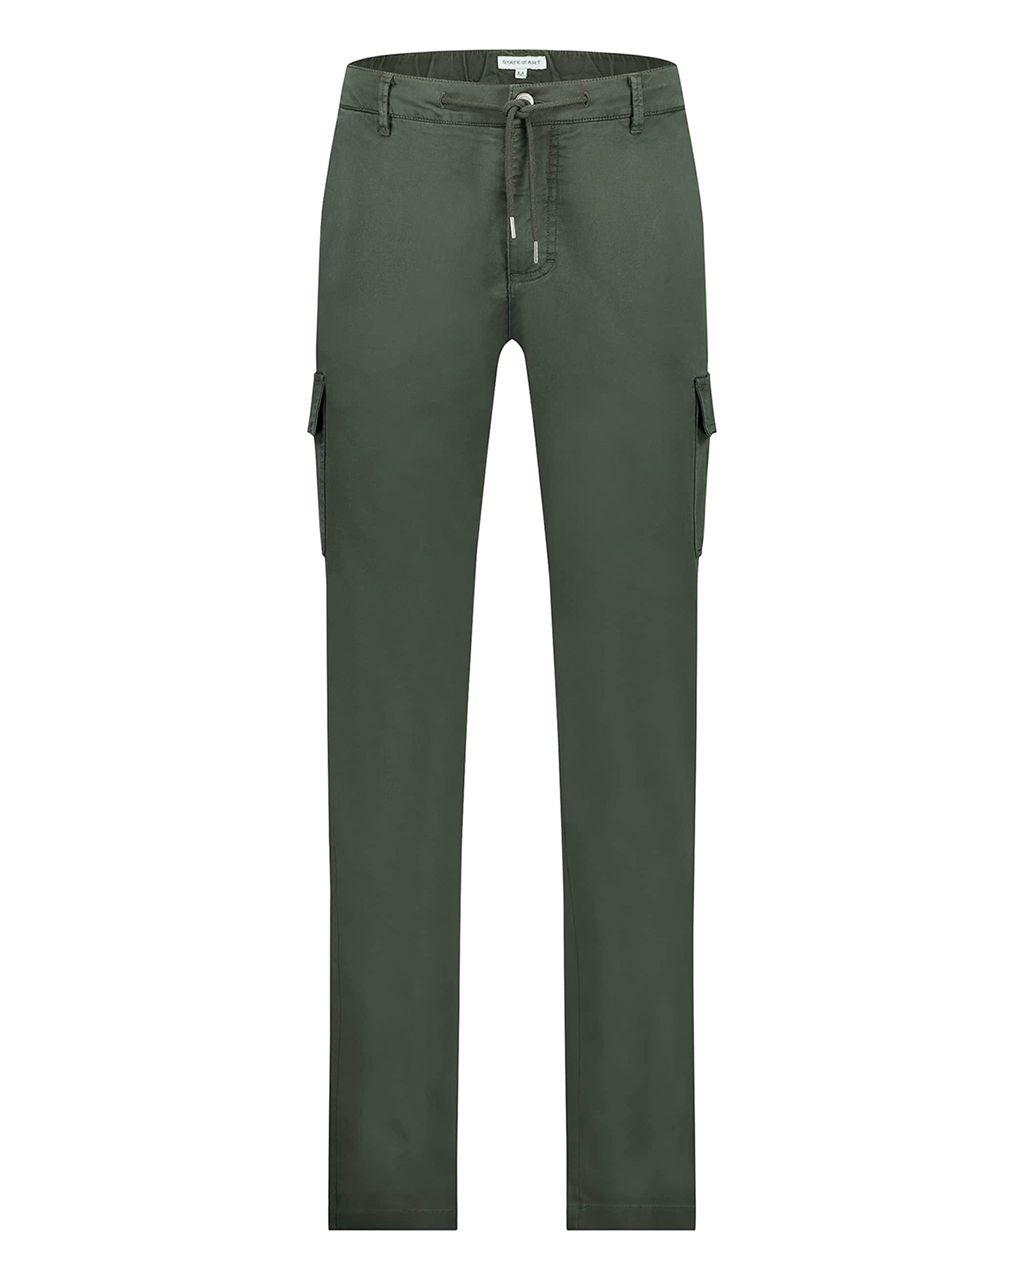 State of Art Pantalon Donker groen 079802-001-4XL